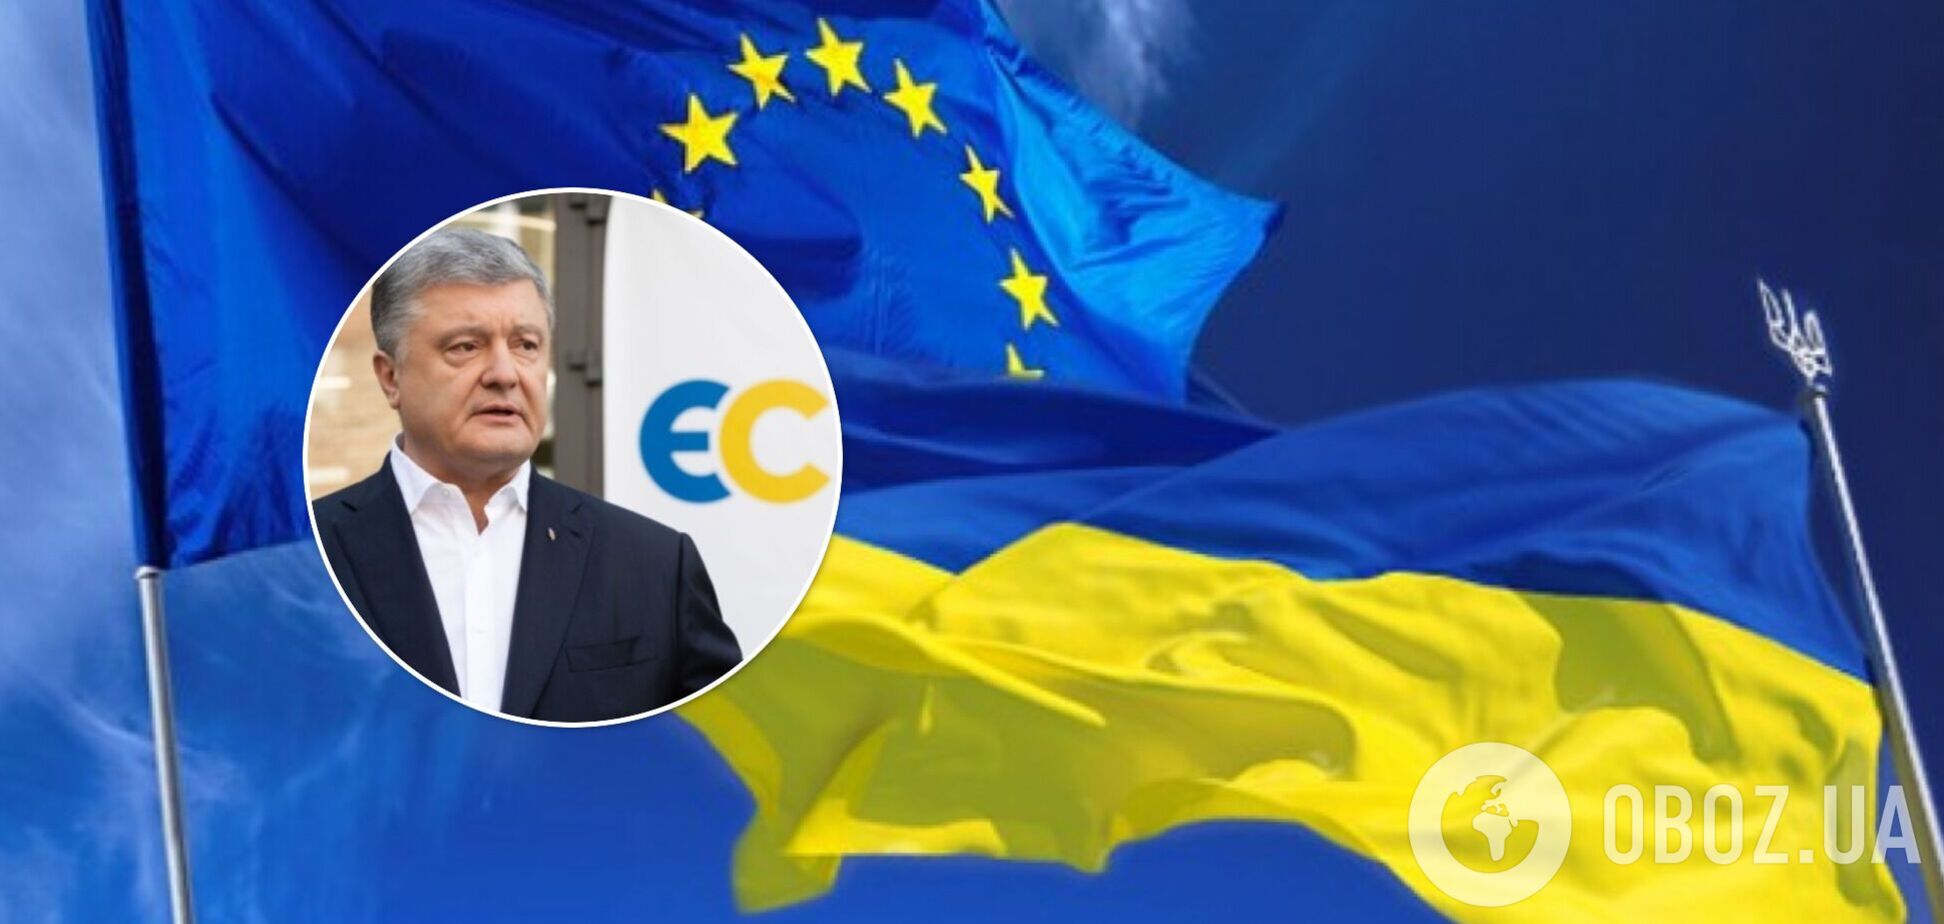 Порошенко поздравил украинцев с годовщиной подписания Соглашения об ассоциации с ЕС